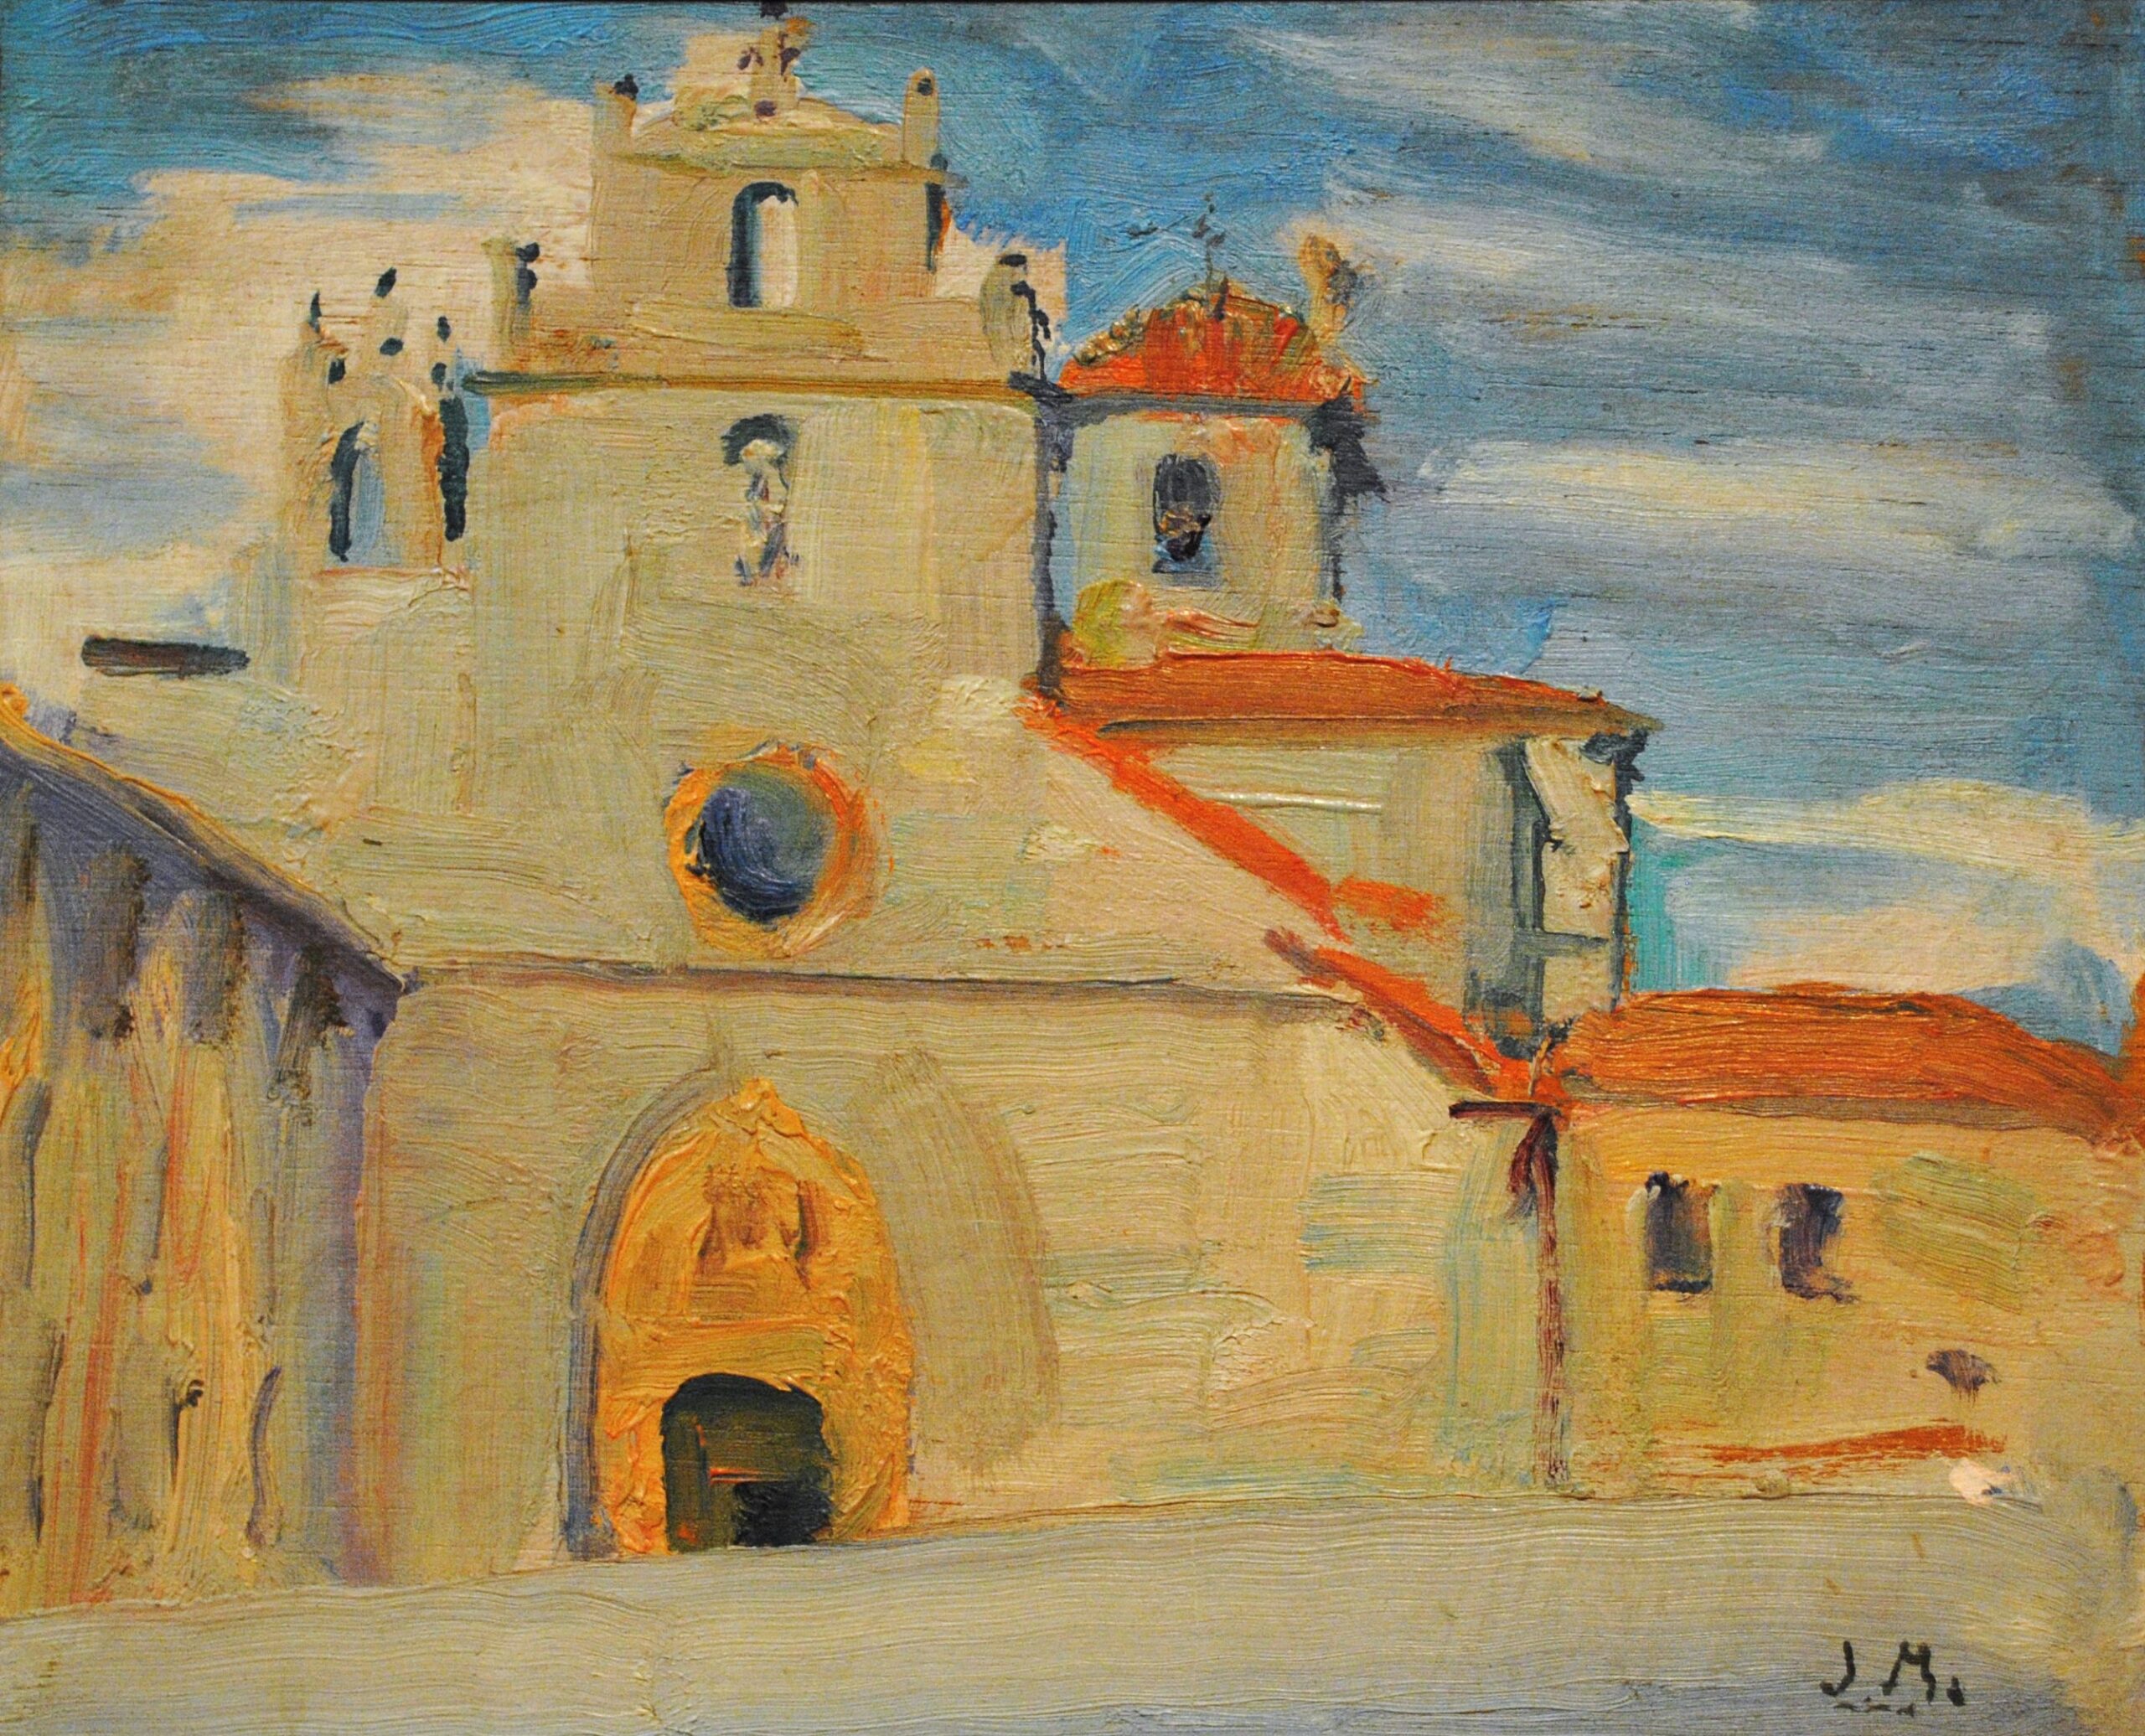 Pintura de José Manaut titulada Orillas del Turia, Loriguilla (Valencia), 1930. Óleo sobre tabla.